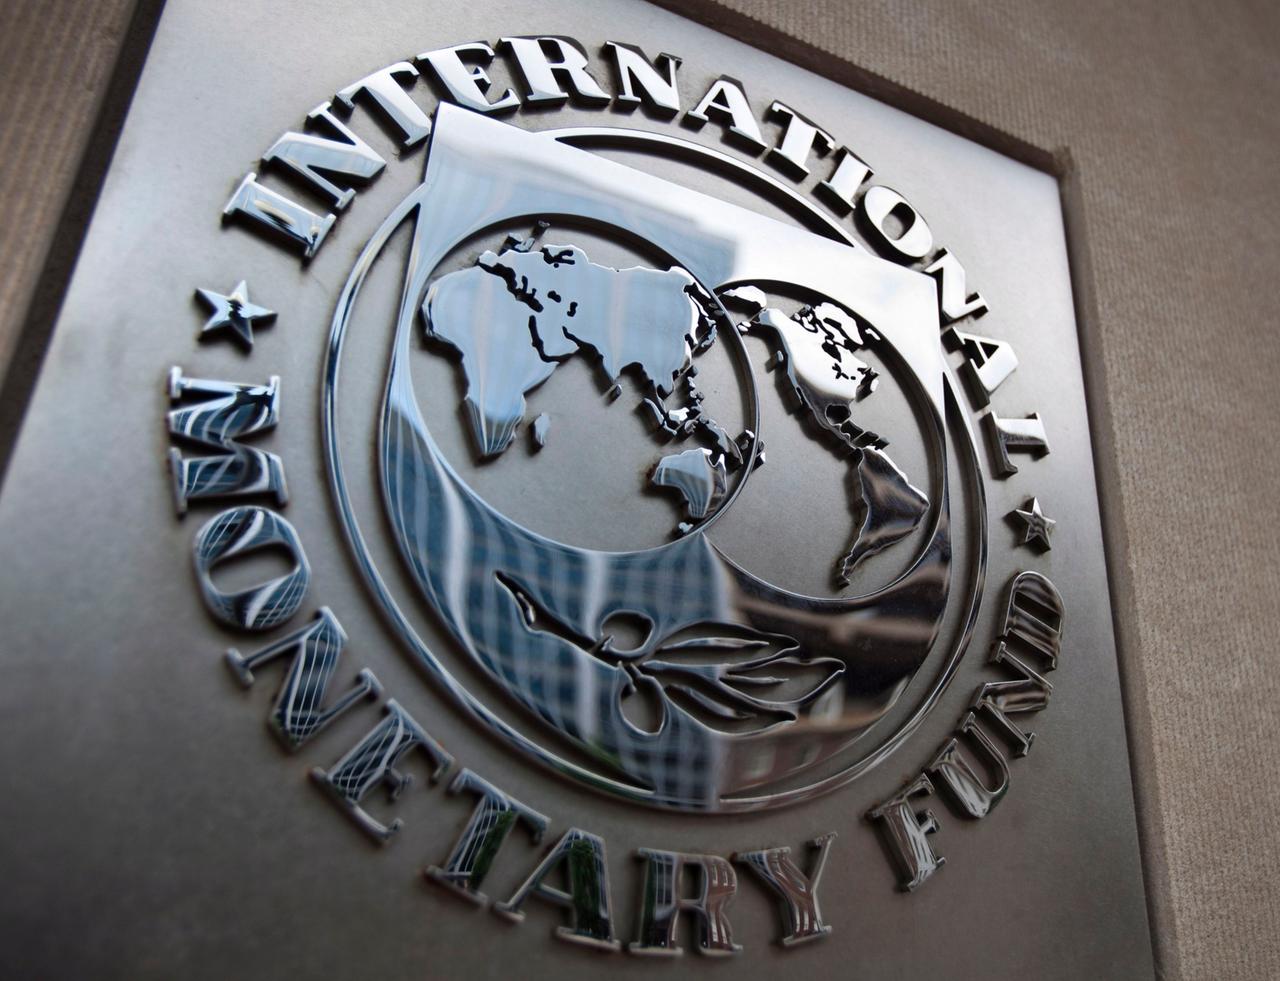 Die viereckige Metallplakette mit dem Logo des IWF an einer Wand.